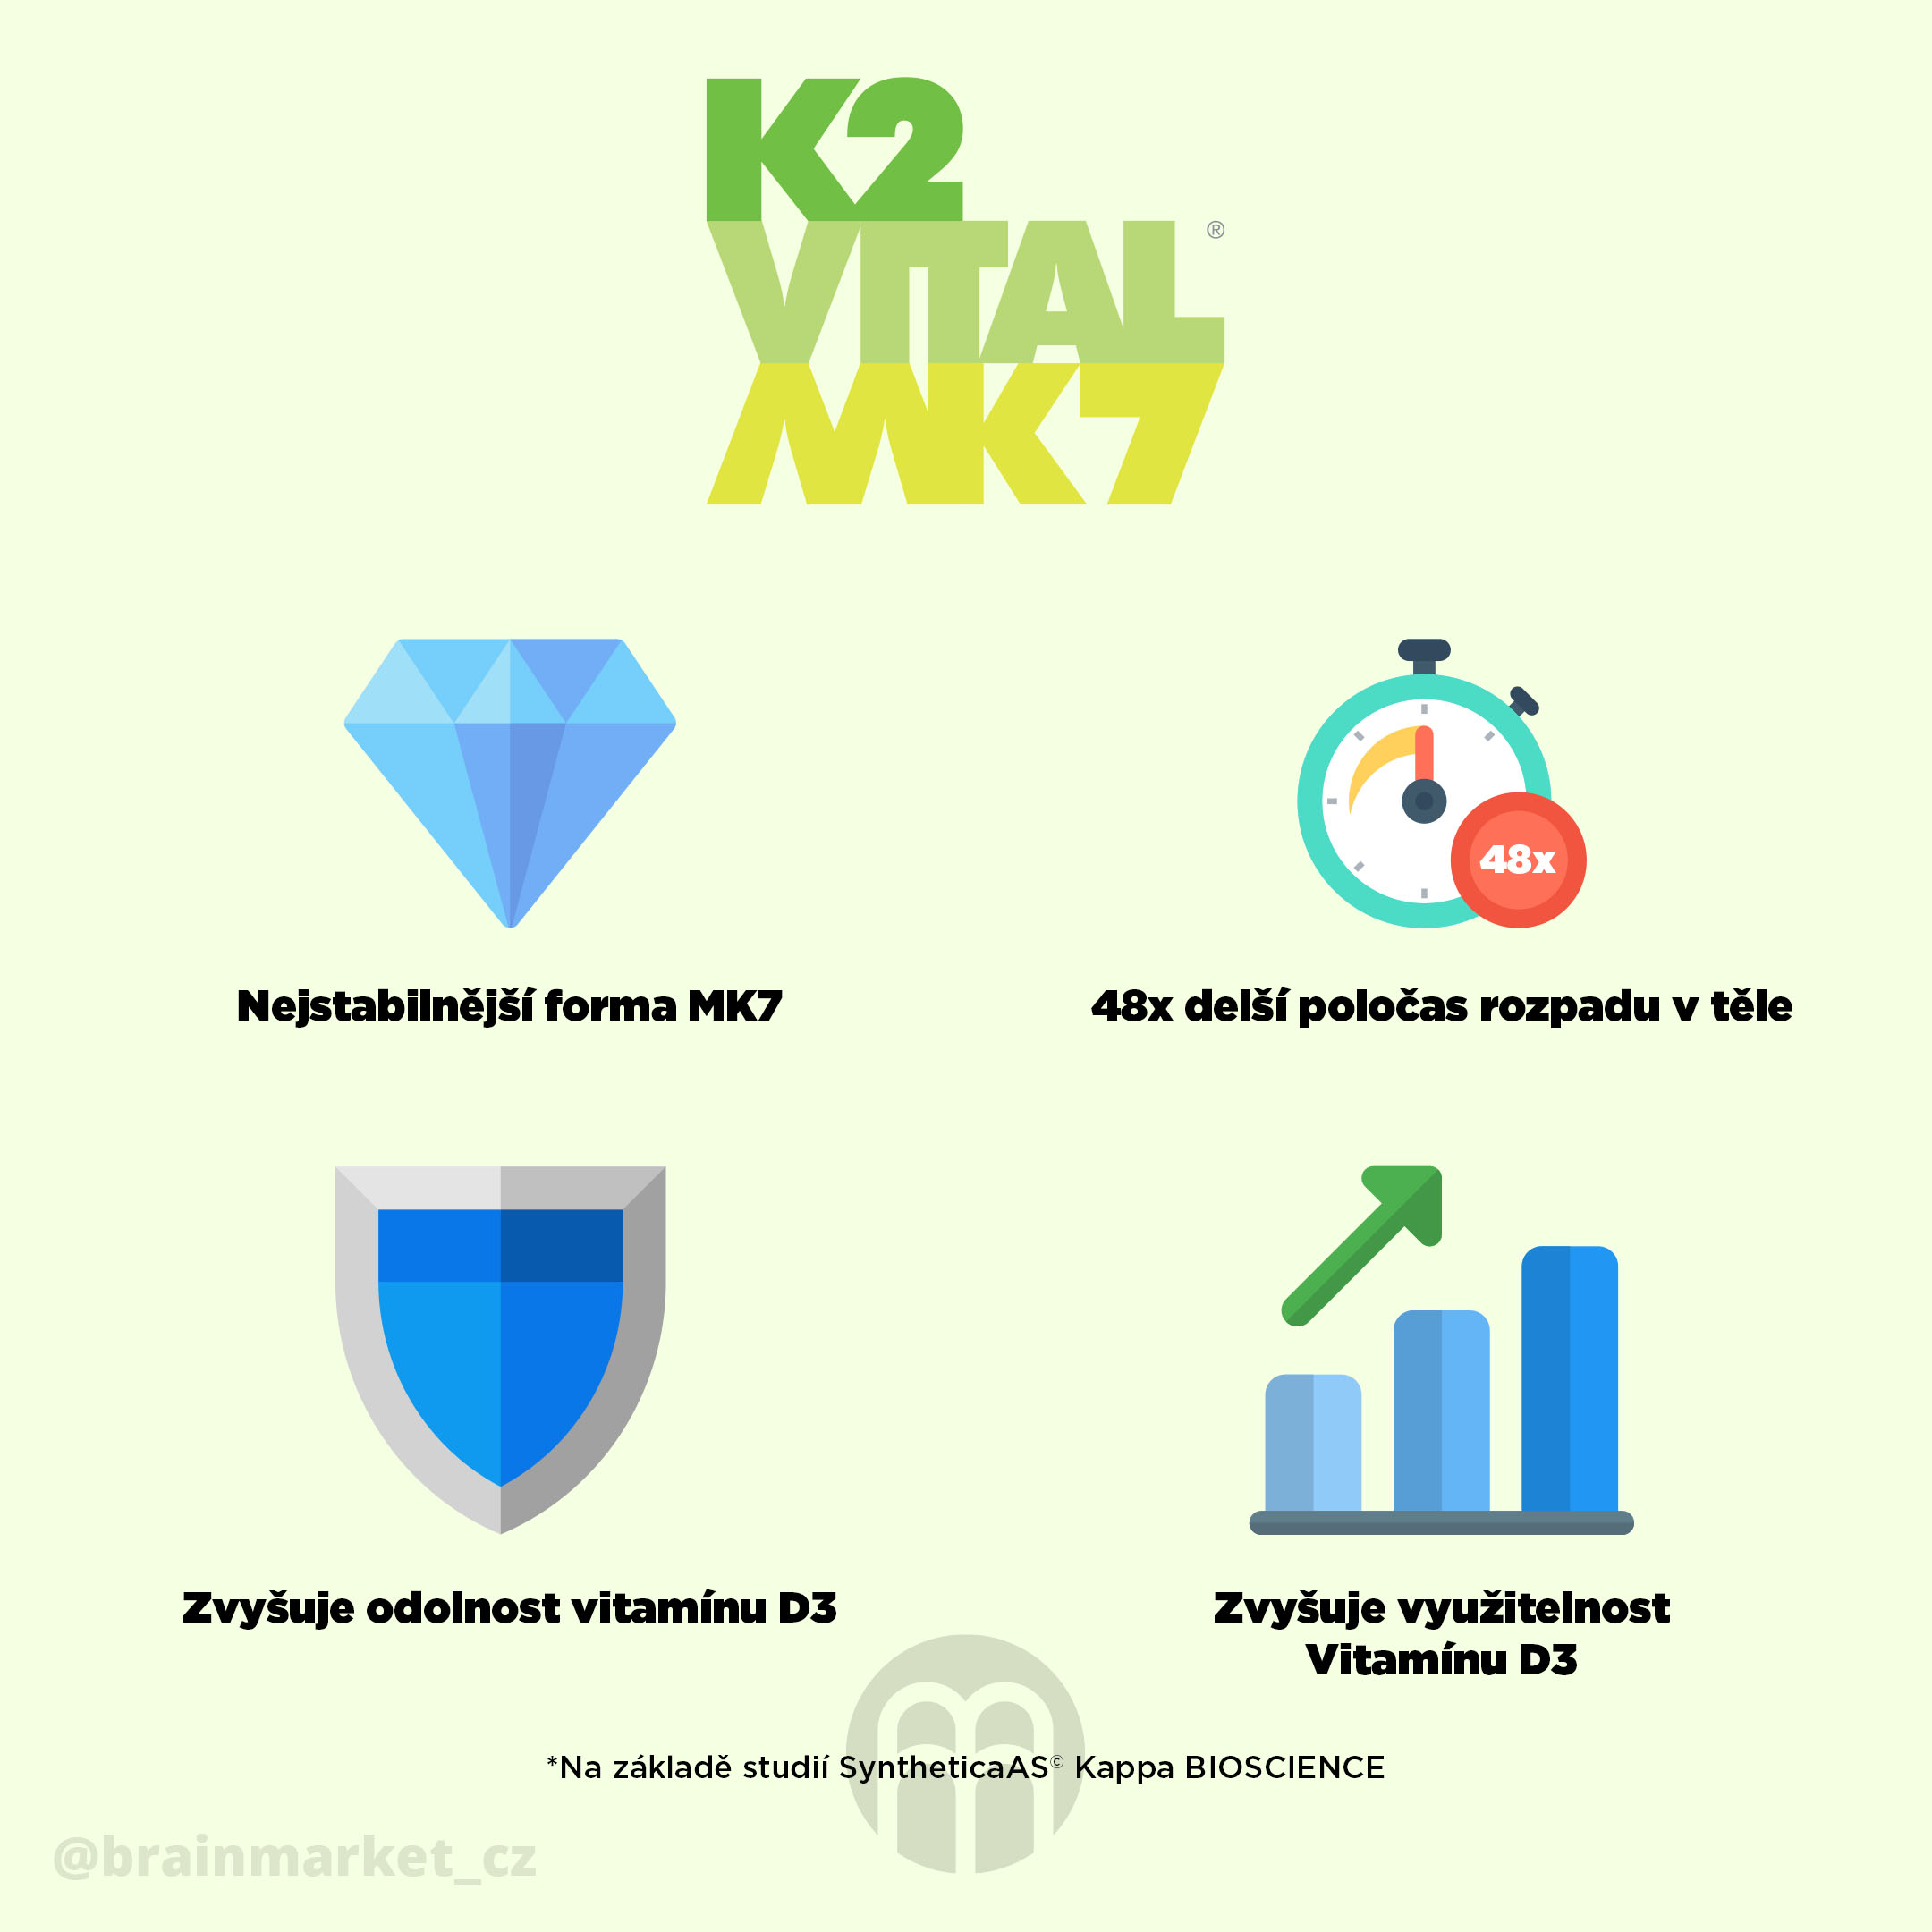 Vitamin K2 jako MK7 K2VITAL®DELTA vyráběný německou společností Kappa BioSicence